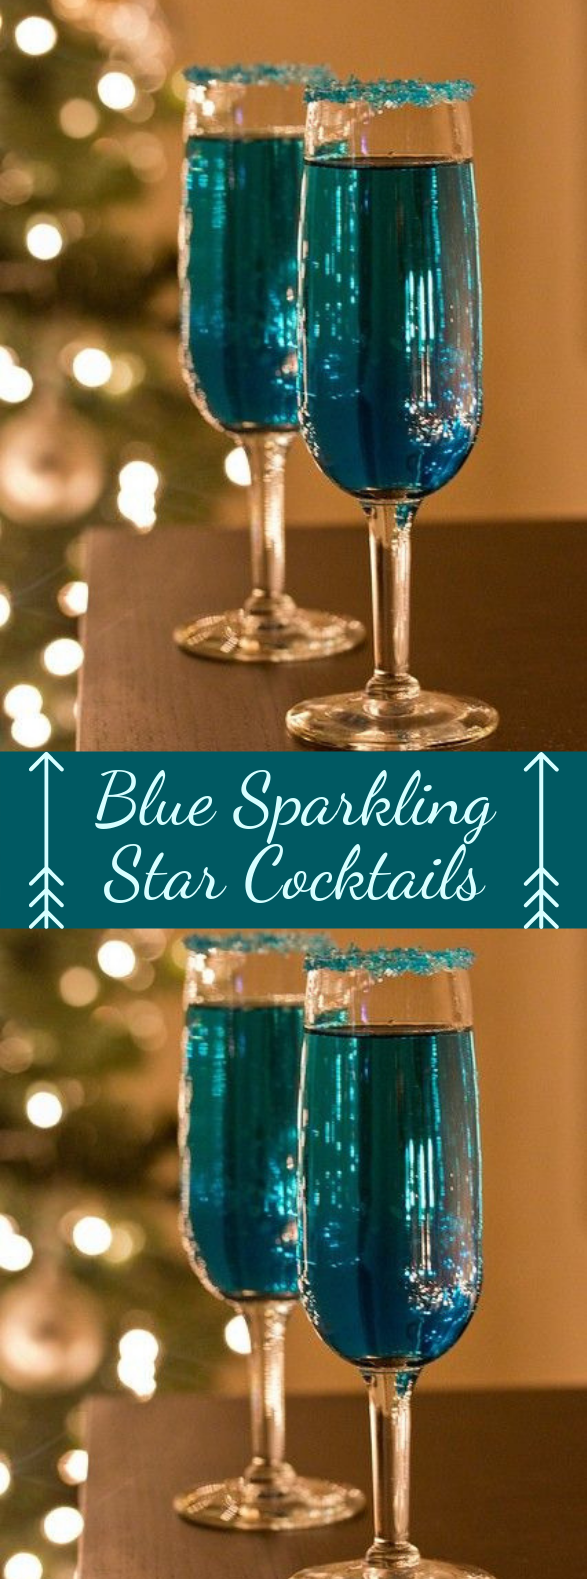 Blue Sparkling Star Cocktails #drinkcocktails #summerdrink